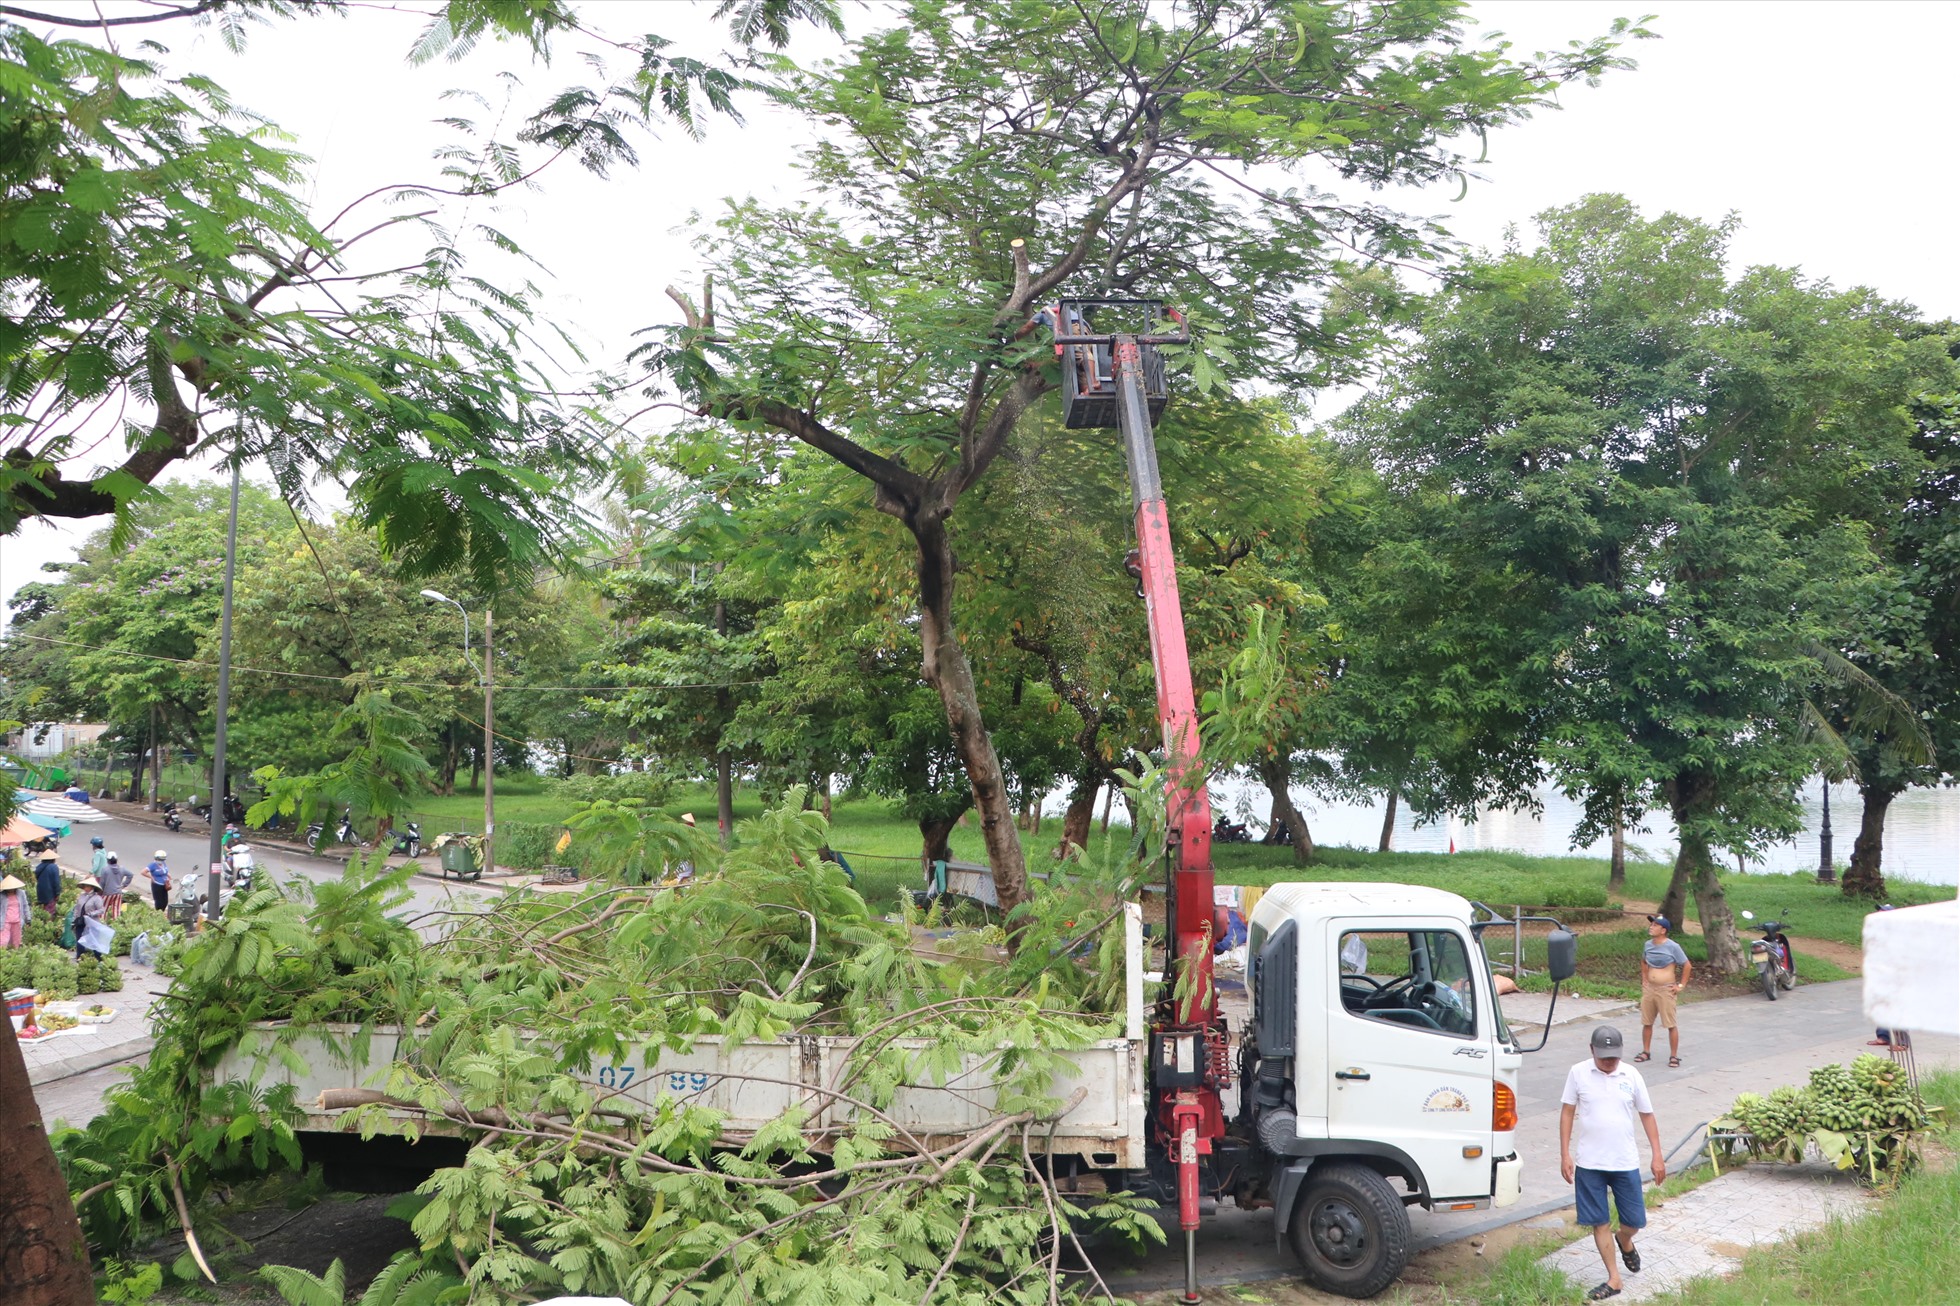 UBND tỉnh Thừa Thiên Huế đã chỉ đạo UBND các huyện, thị xã và TP. Huế, Trung tâm Công viên cây xanh triển khai cắt tỉa, gia cố cây xanh tại các khu đô thị.